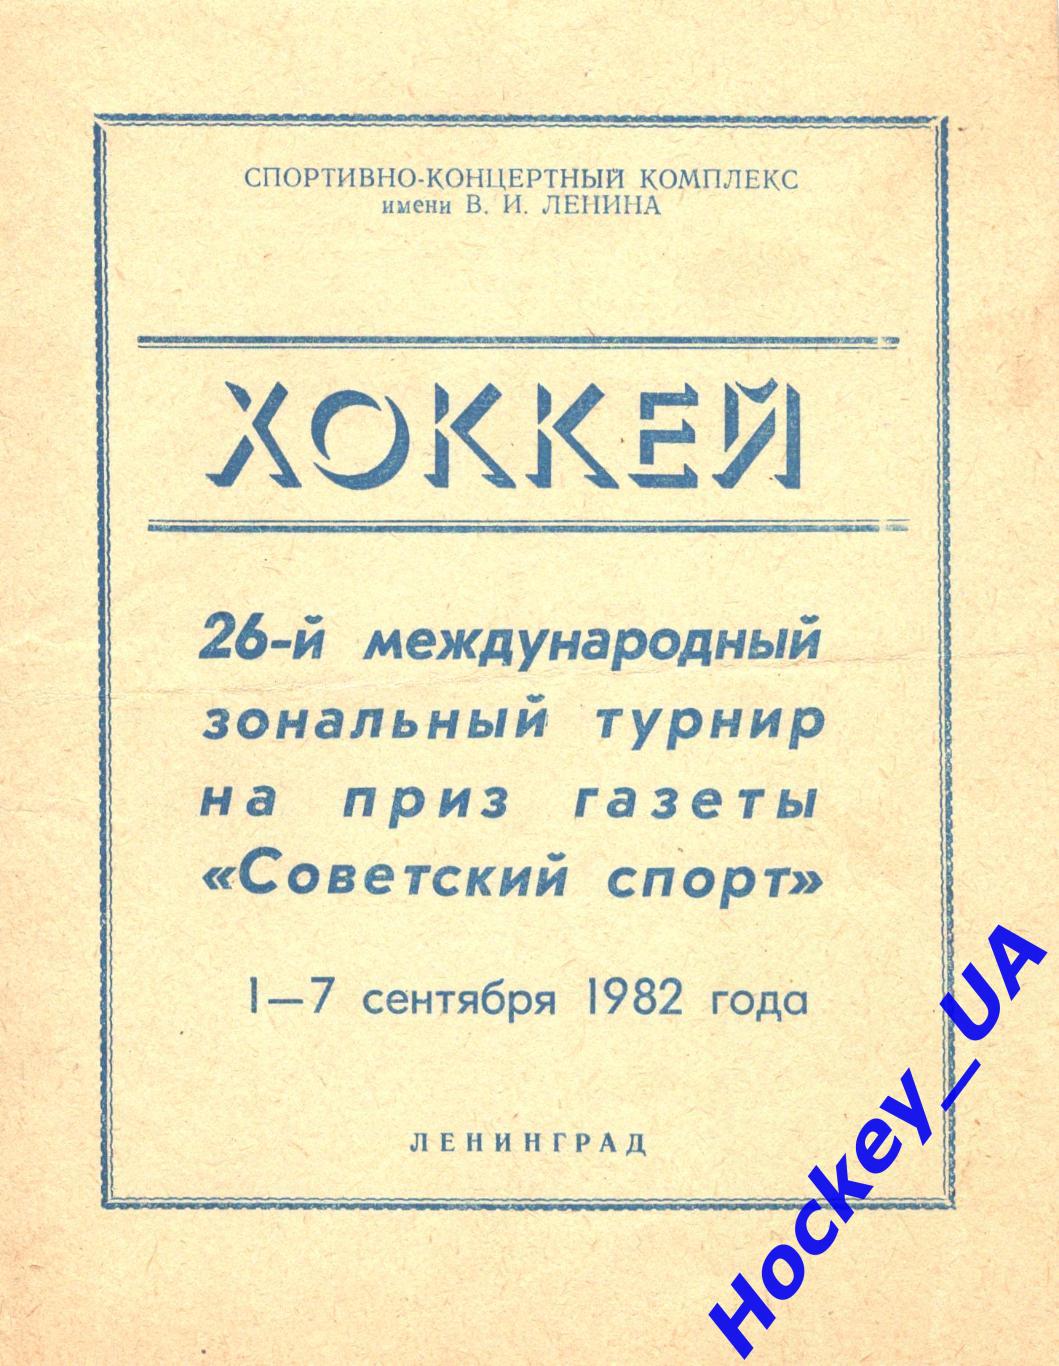 26-й международный турнир на приз газеты Советский спорт 01-07 сентября 1982